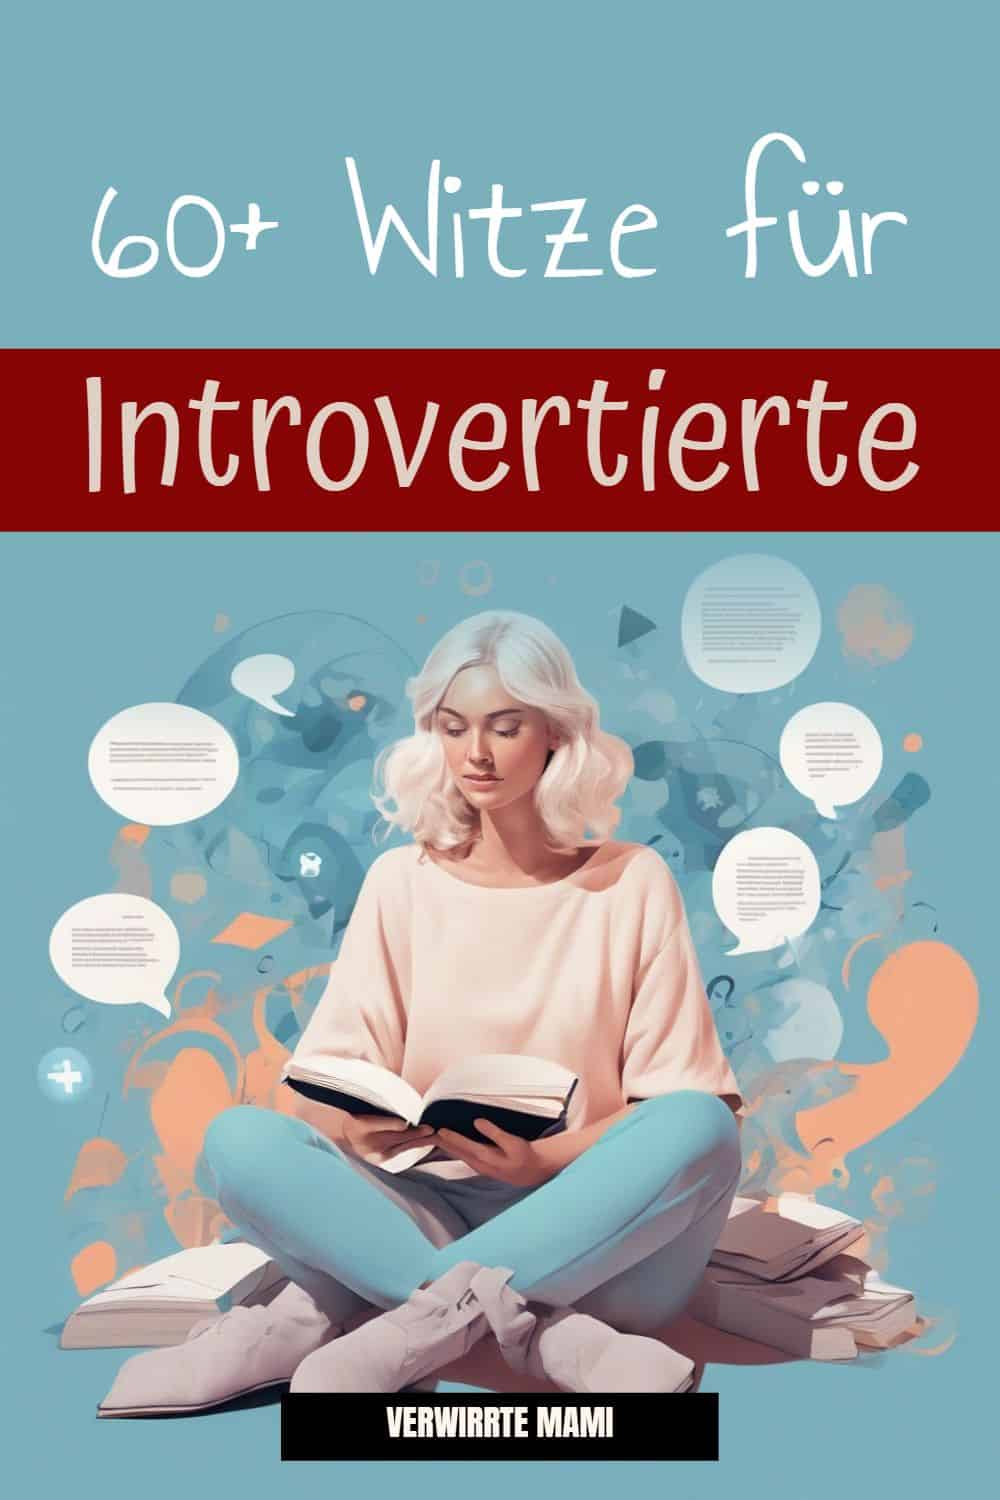 60+ Witze für Introvertierte